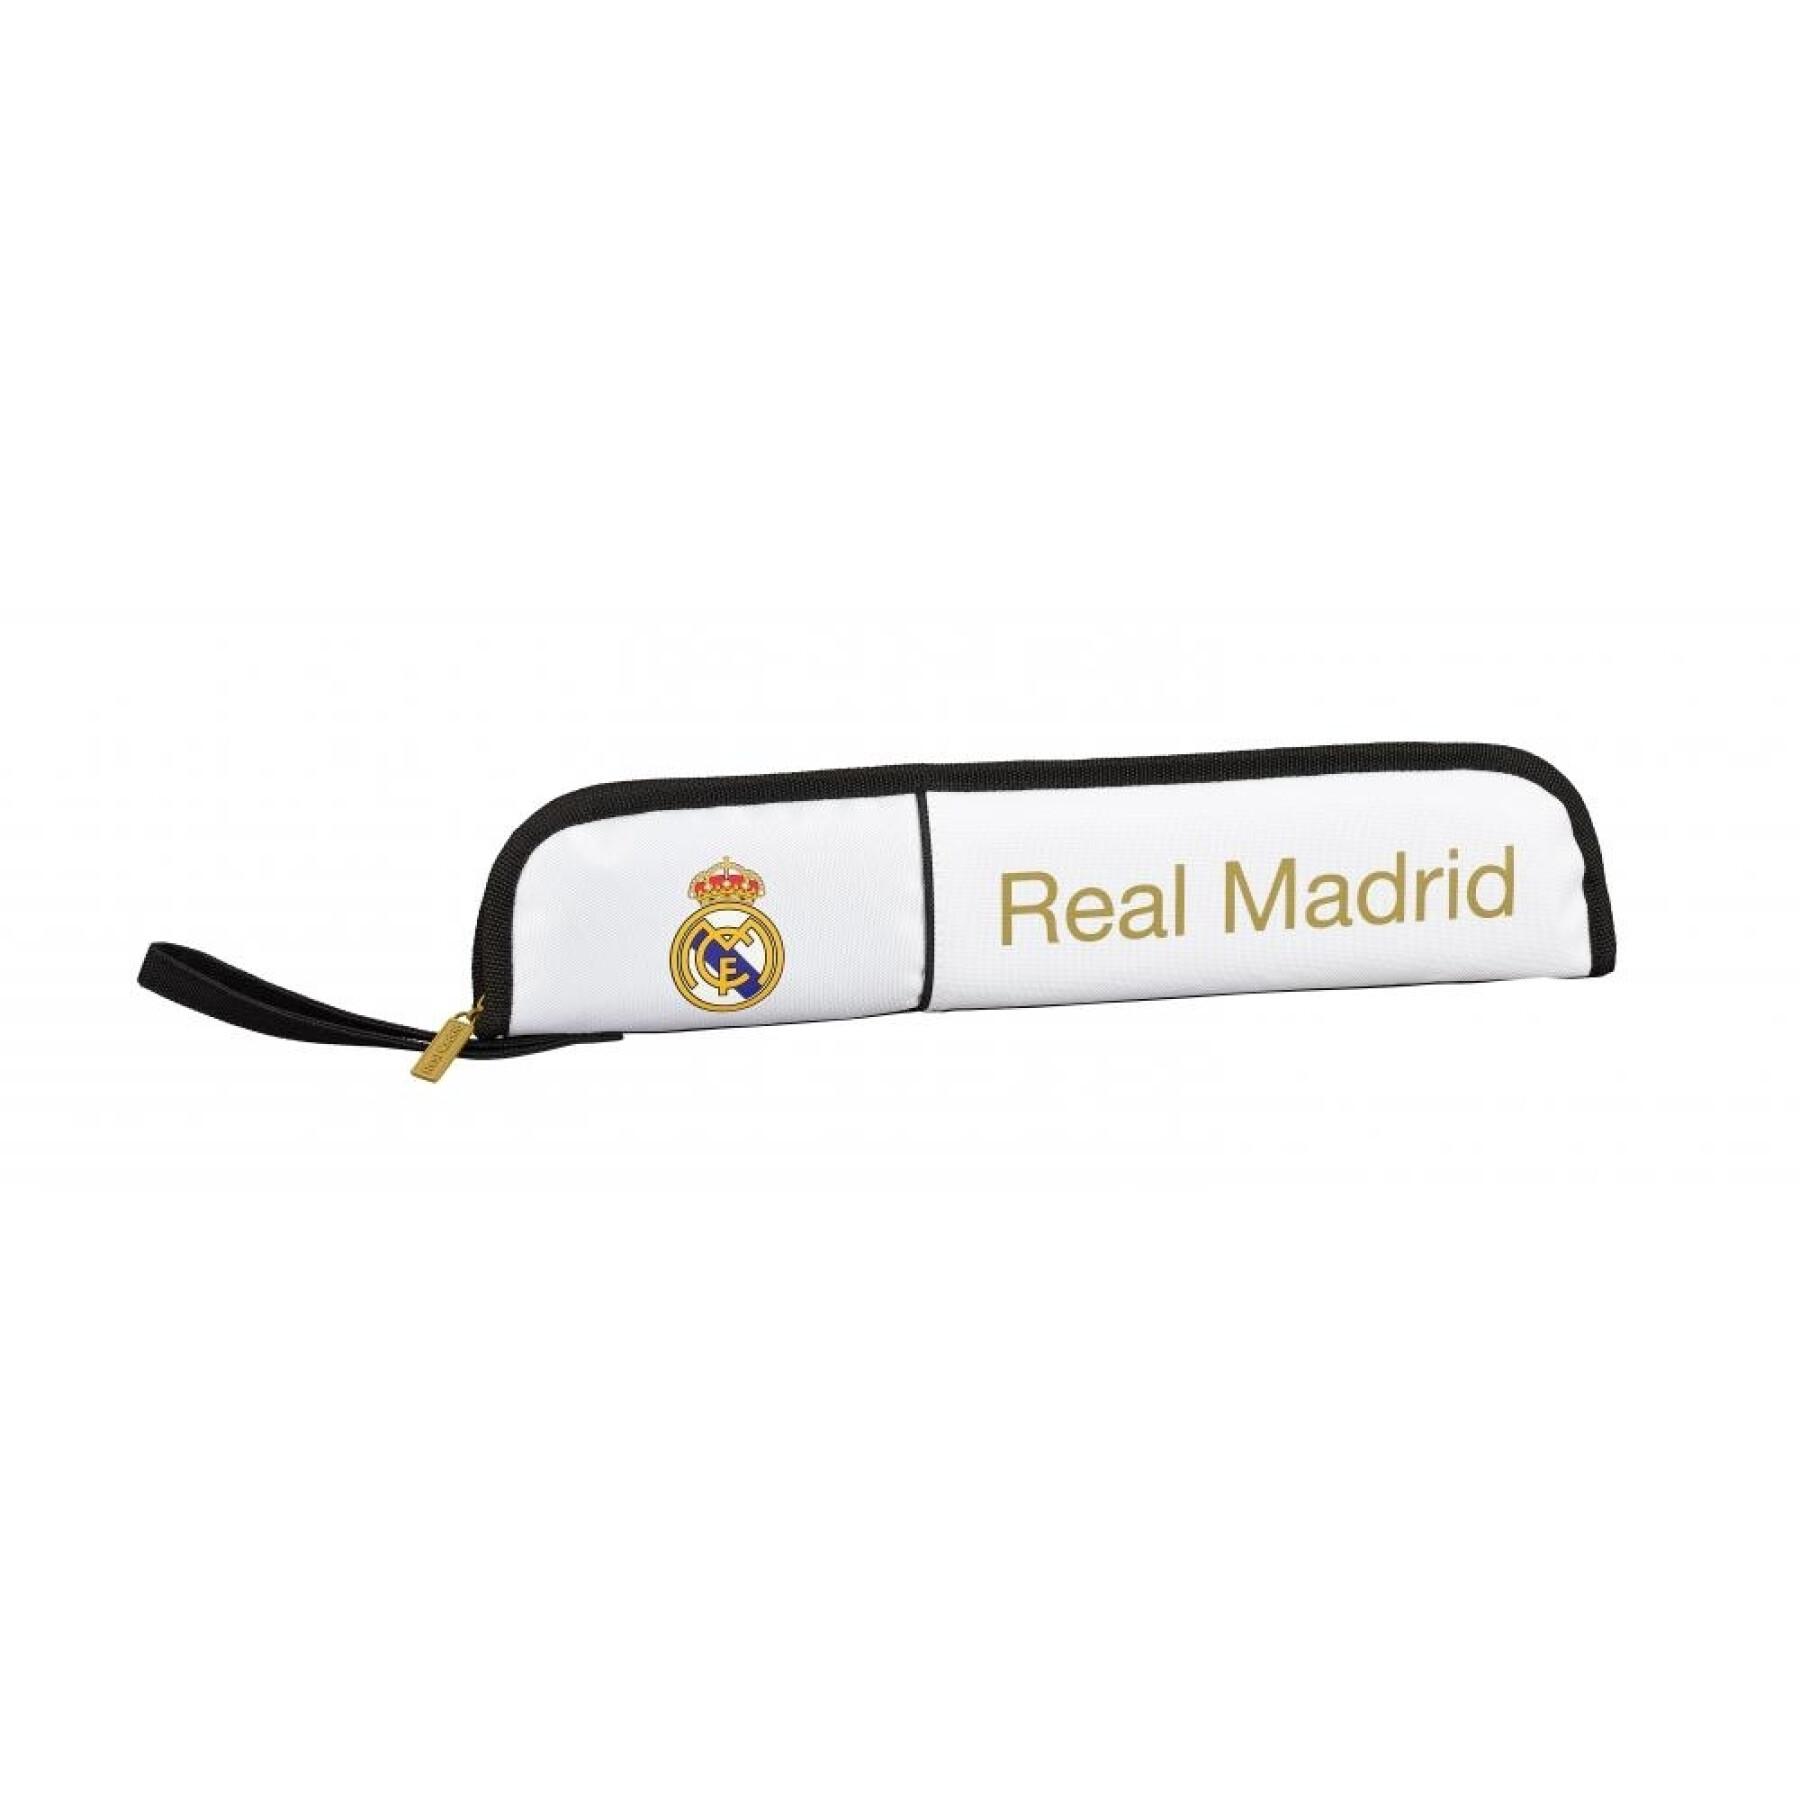 Children's flute holder Real Madrid 2019/2020